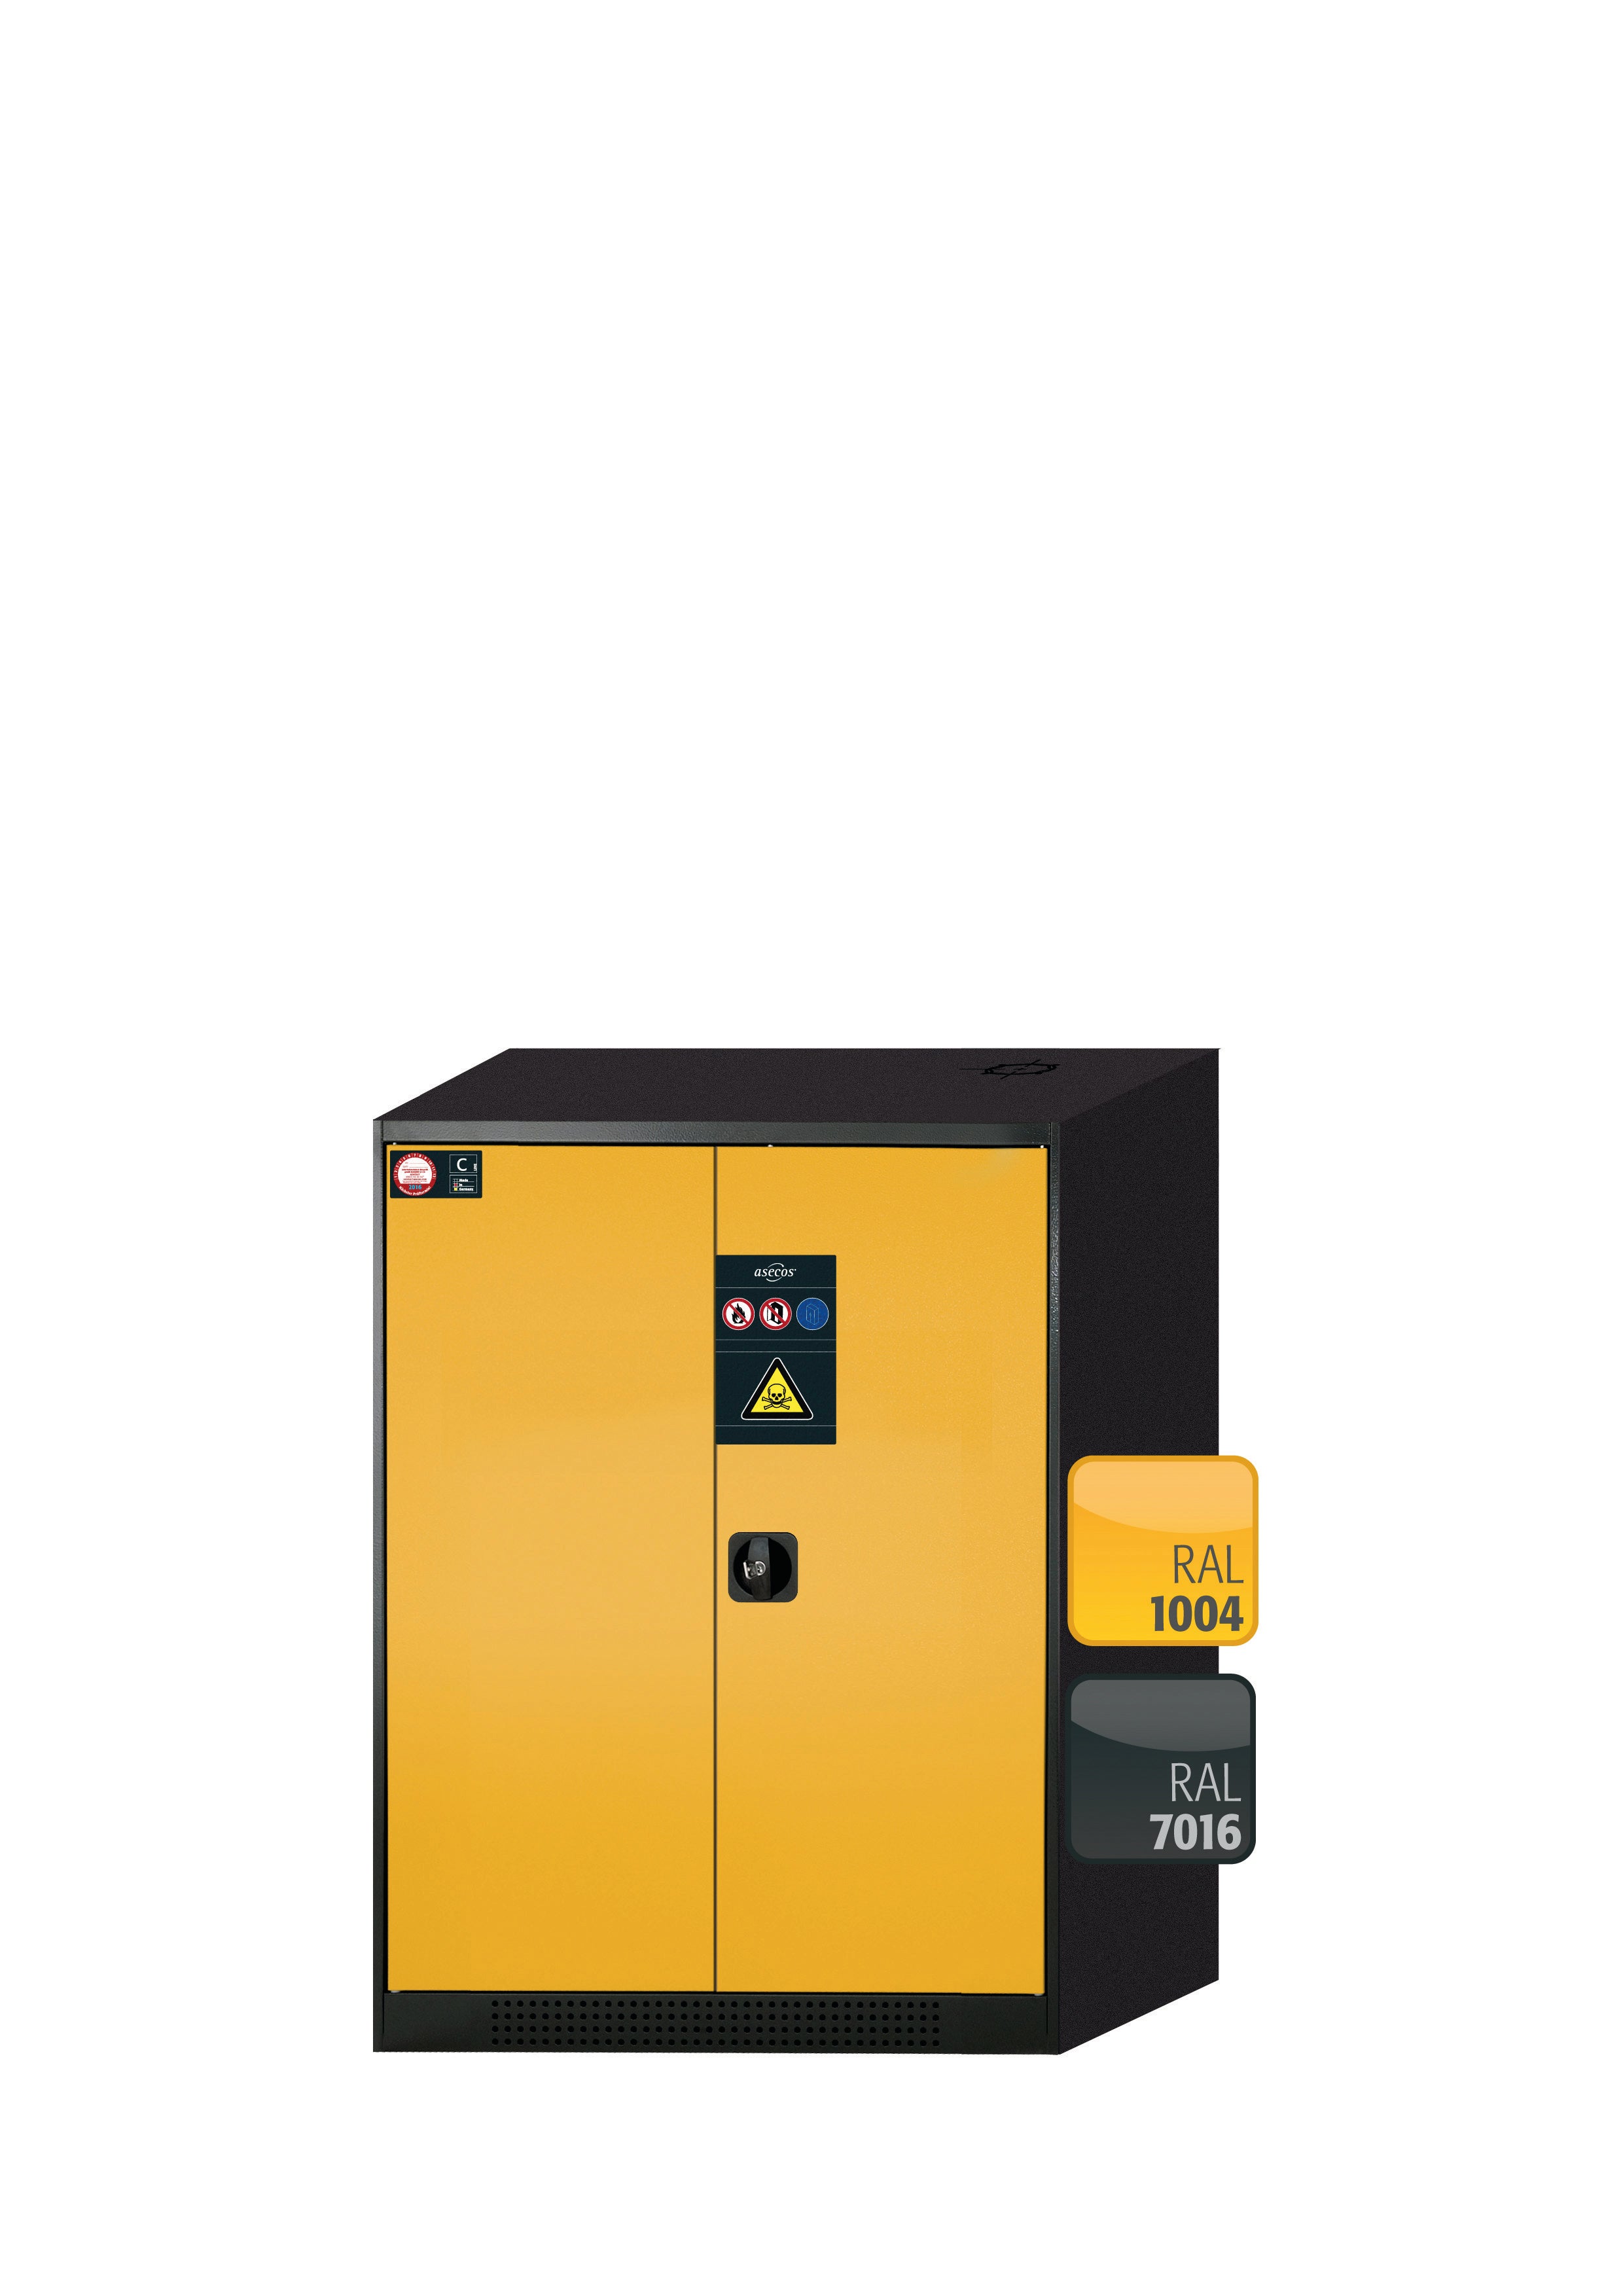 Armoire chimique CS-CLASSIC modèle CS.110.081 en jaune sécurité RAL 1004 avec 3 étagères coulissantes AbZ (tôle d'acier/polypropylène)